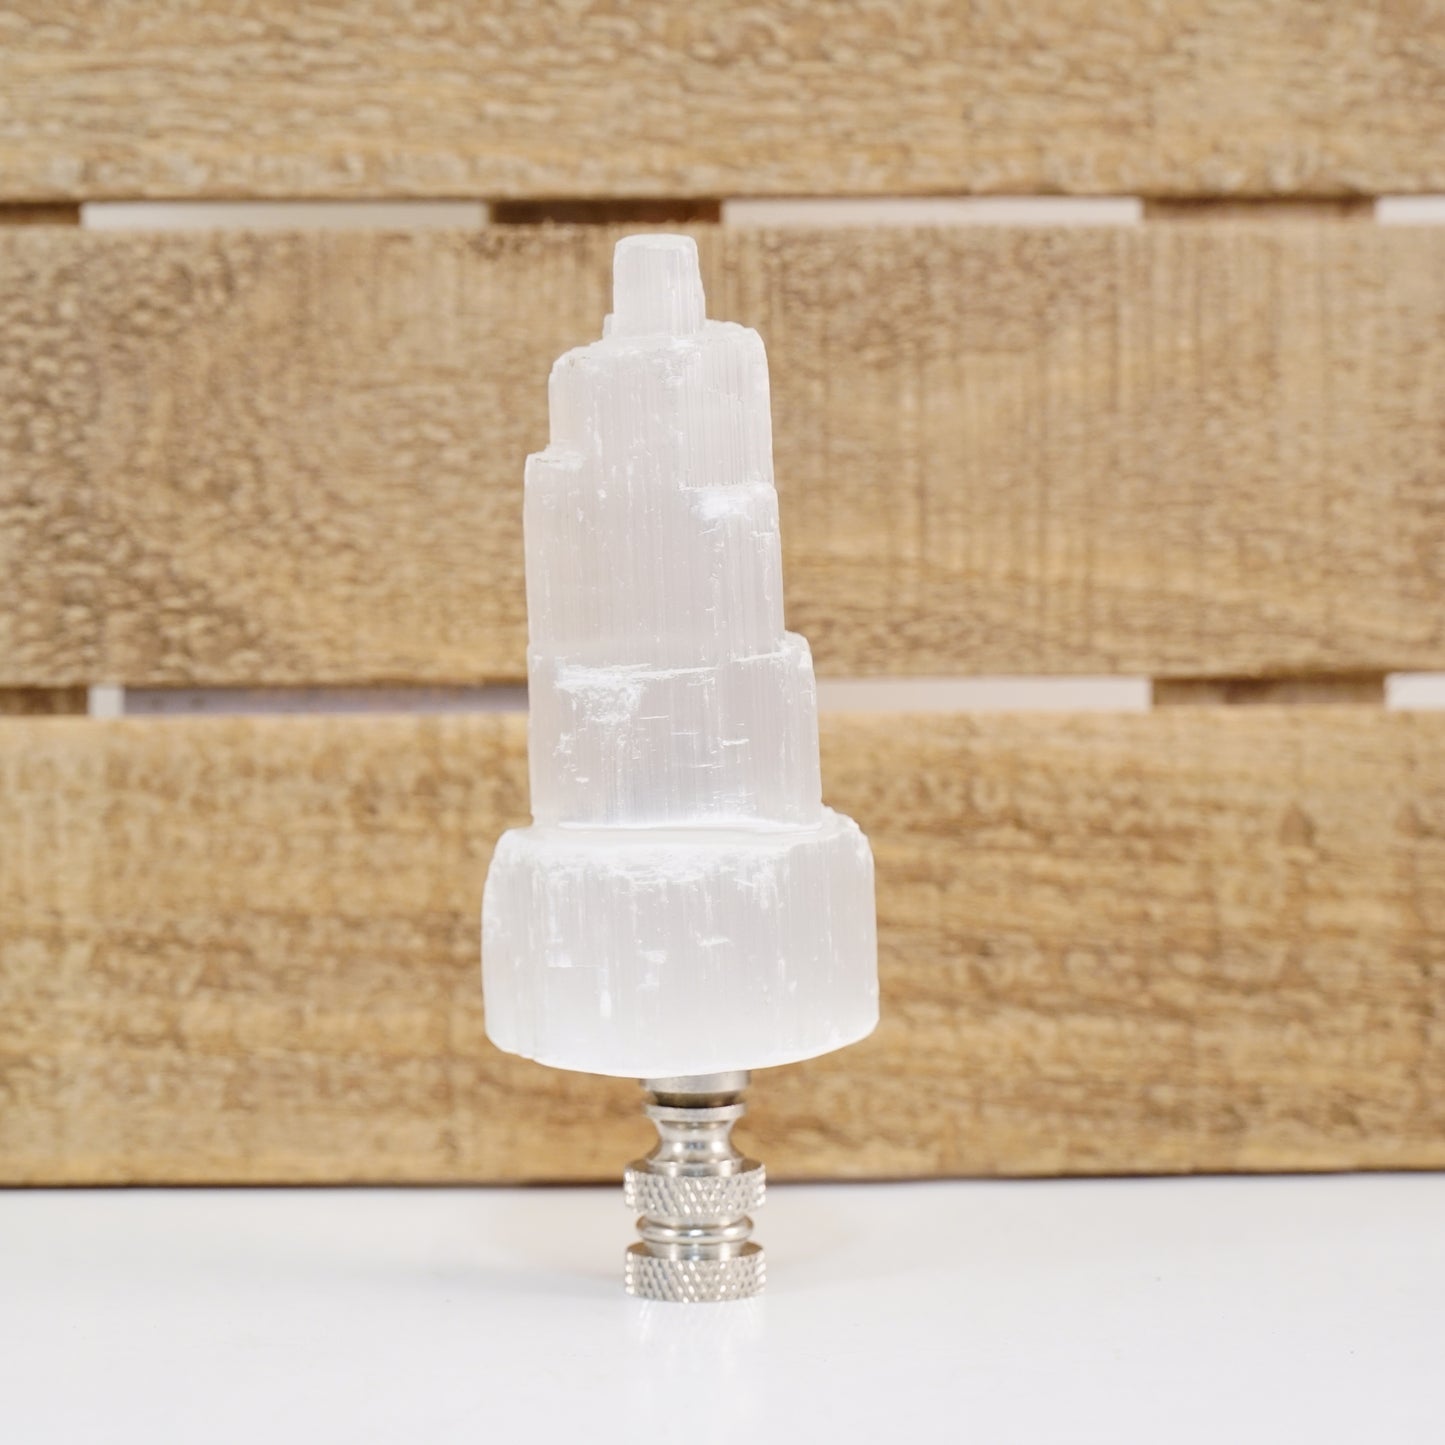 Lamp Harp Finial - Selenite Crystal Tower